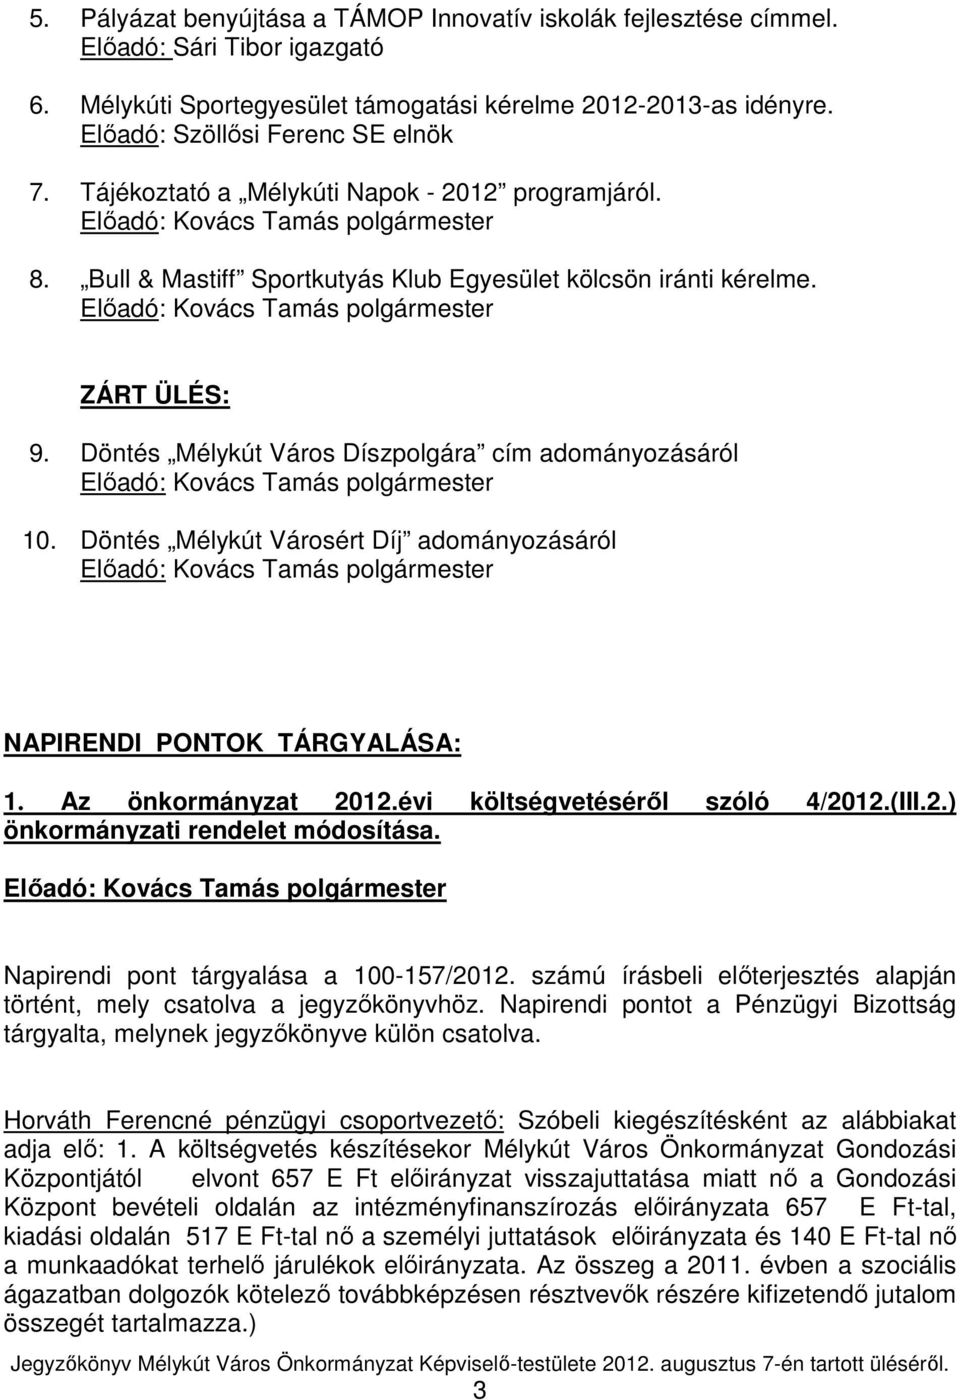 Döntés Mélykút Városért Díj adományozásáról NAPIRENDI PONTOK TÁRGYALÁSA: 1. Az önkormányzat 2012.évi költségvetésérıl szóló 4/2012.(III.2.) önkormányzati rendelet módosítása.